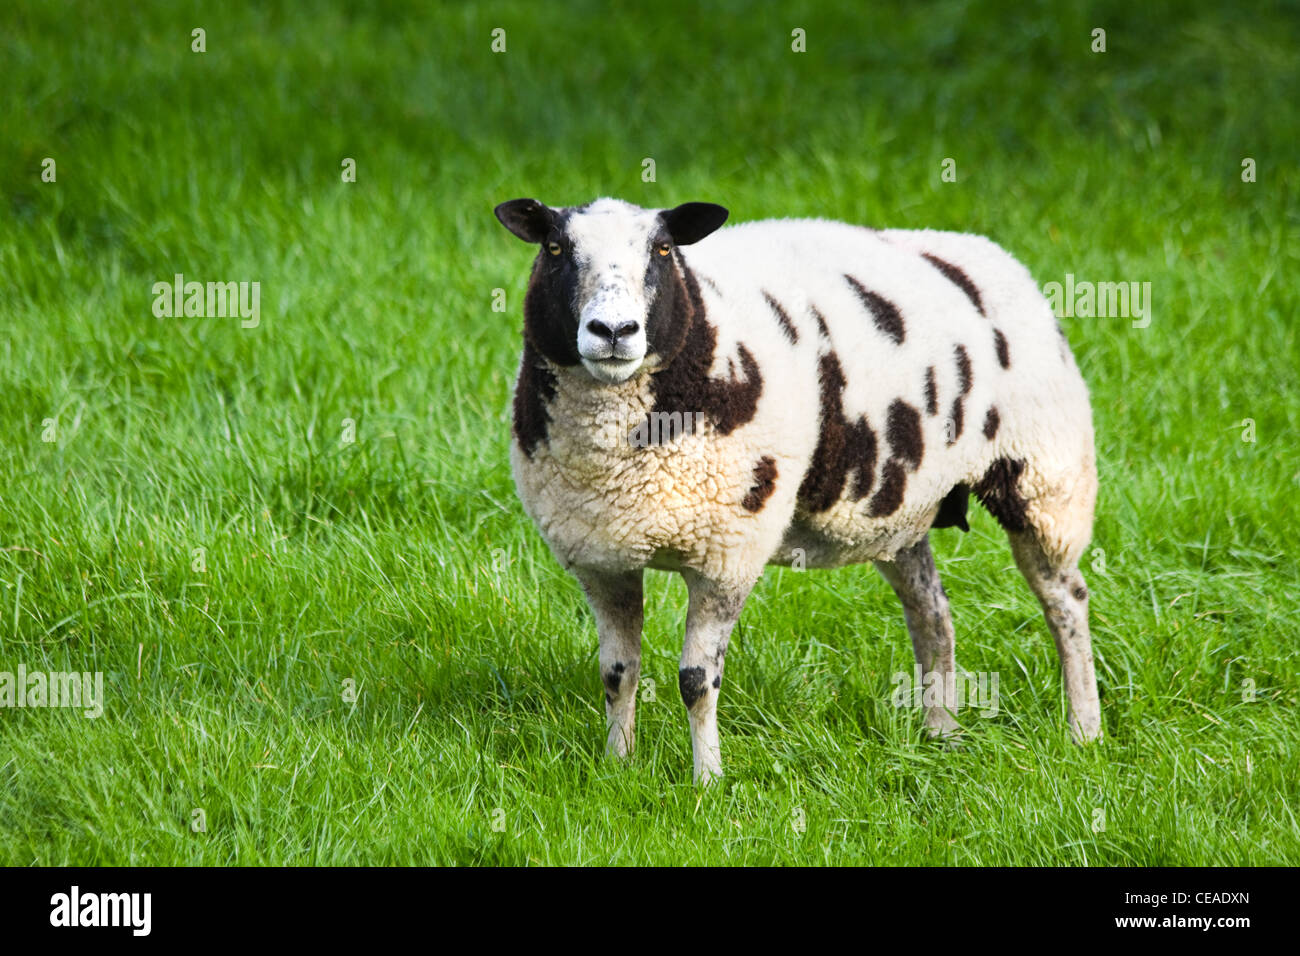 Braun-weiß gefleckte Schafe in Wiese nachschlagen Stockfotografie - Alamy